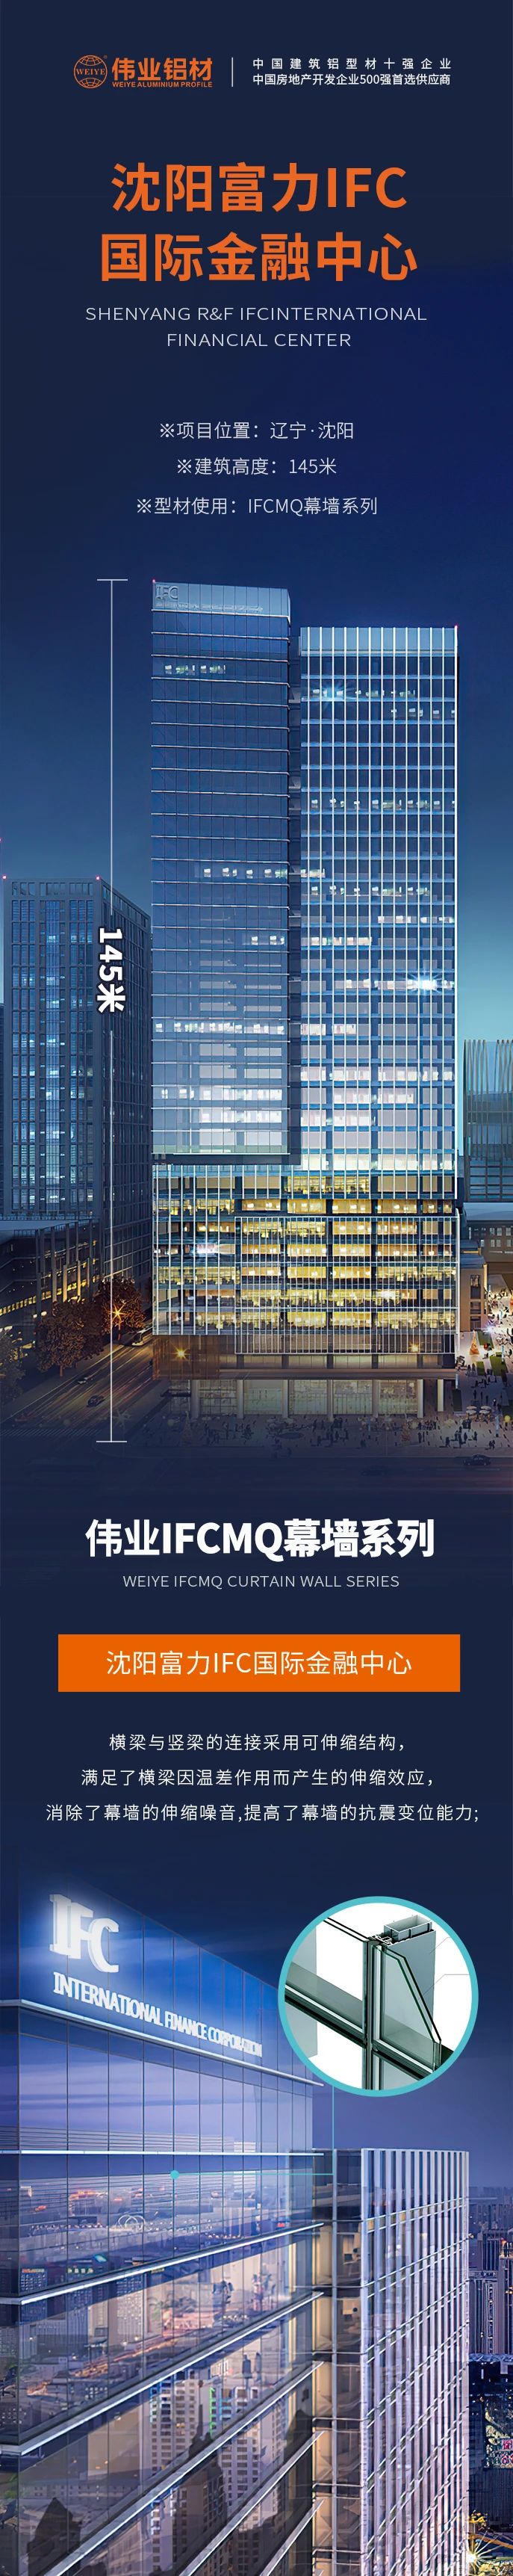 #伟业铝材超百米项目分享# 工程名字：沈阳富力IFC国际金融中心 建筑高度：145米 伟业产品：伟业IFCMQ幕墙系列